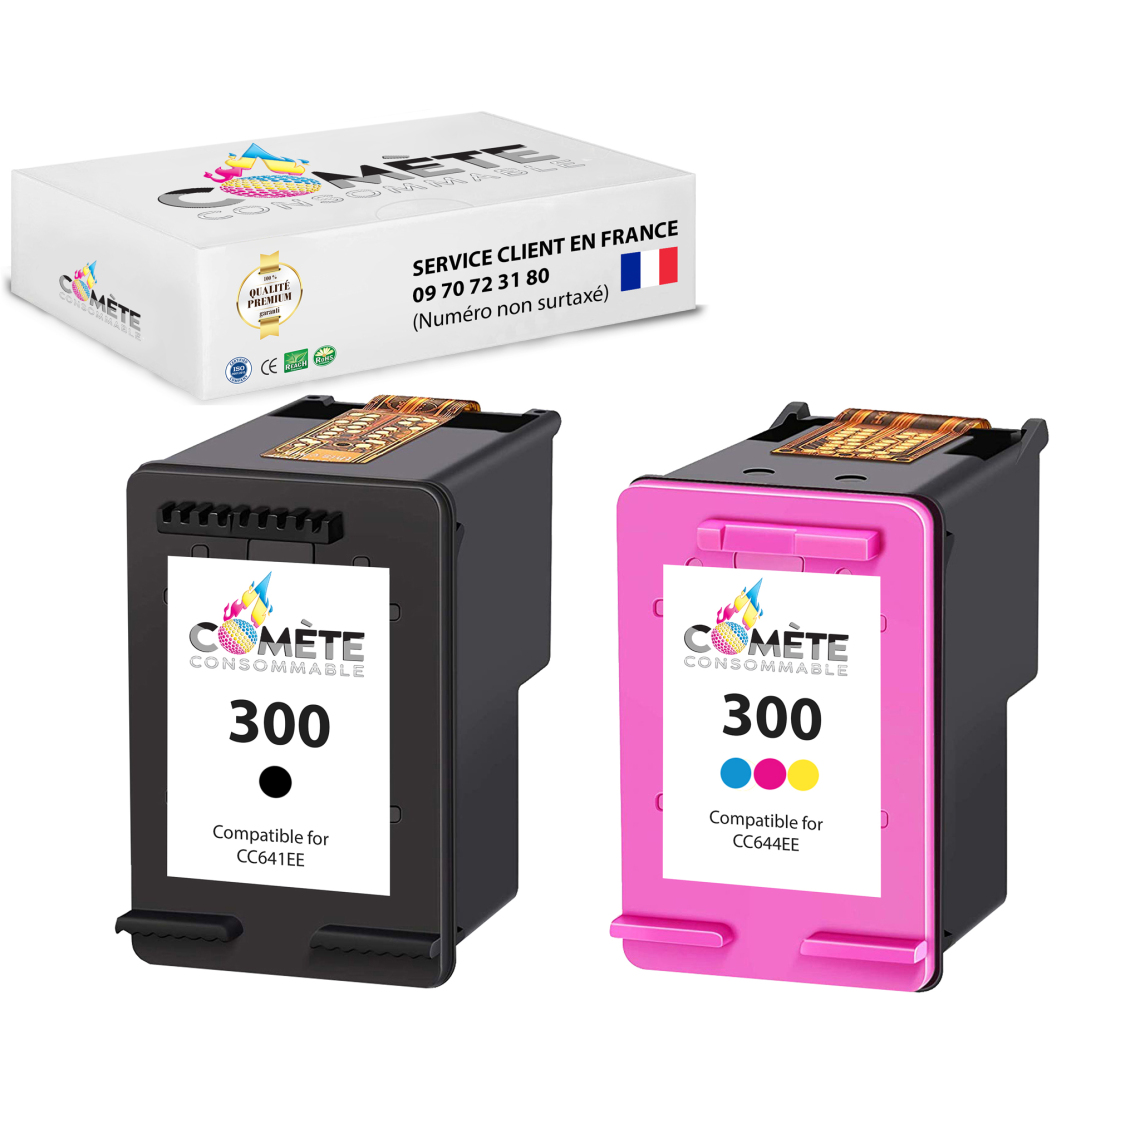 Comete Consommable - 300 2 Cartouche d'encre compatibles avec HP 300 Noir + Couleur - Imprimante Jet d'encre